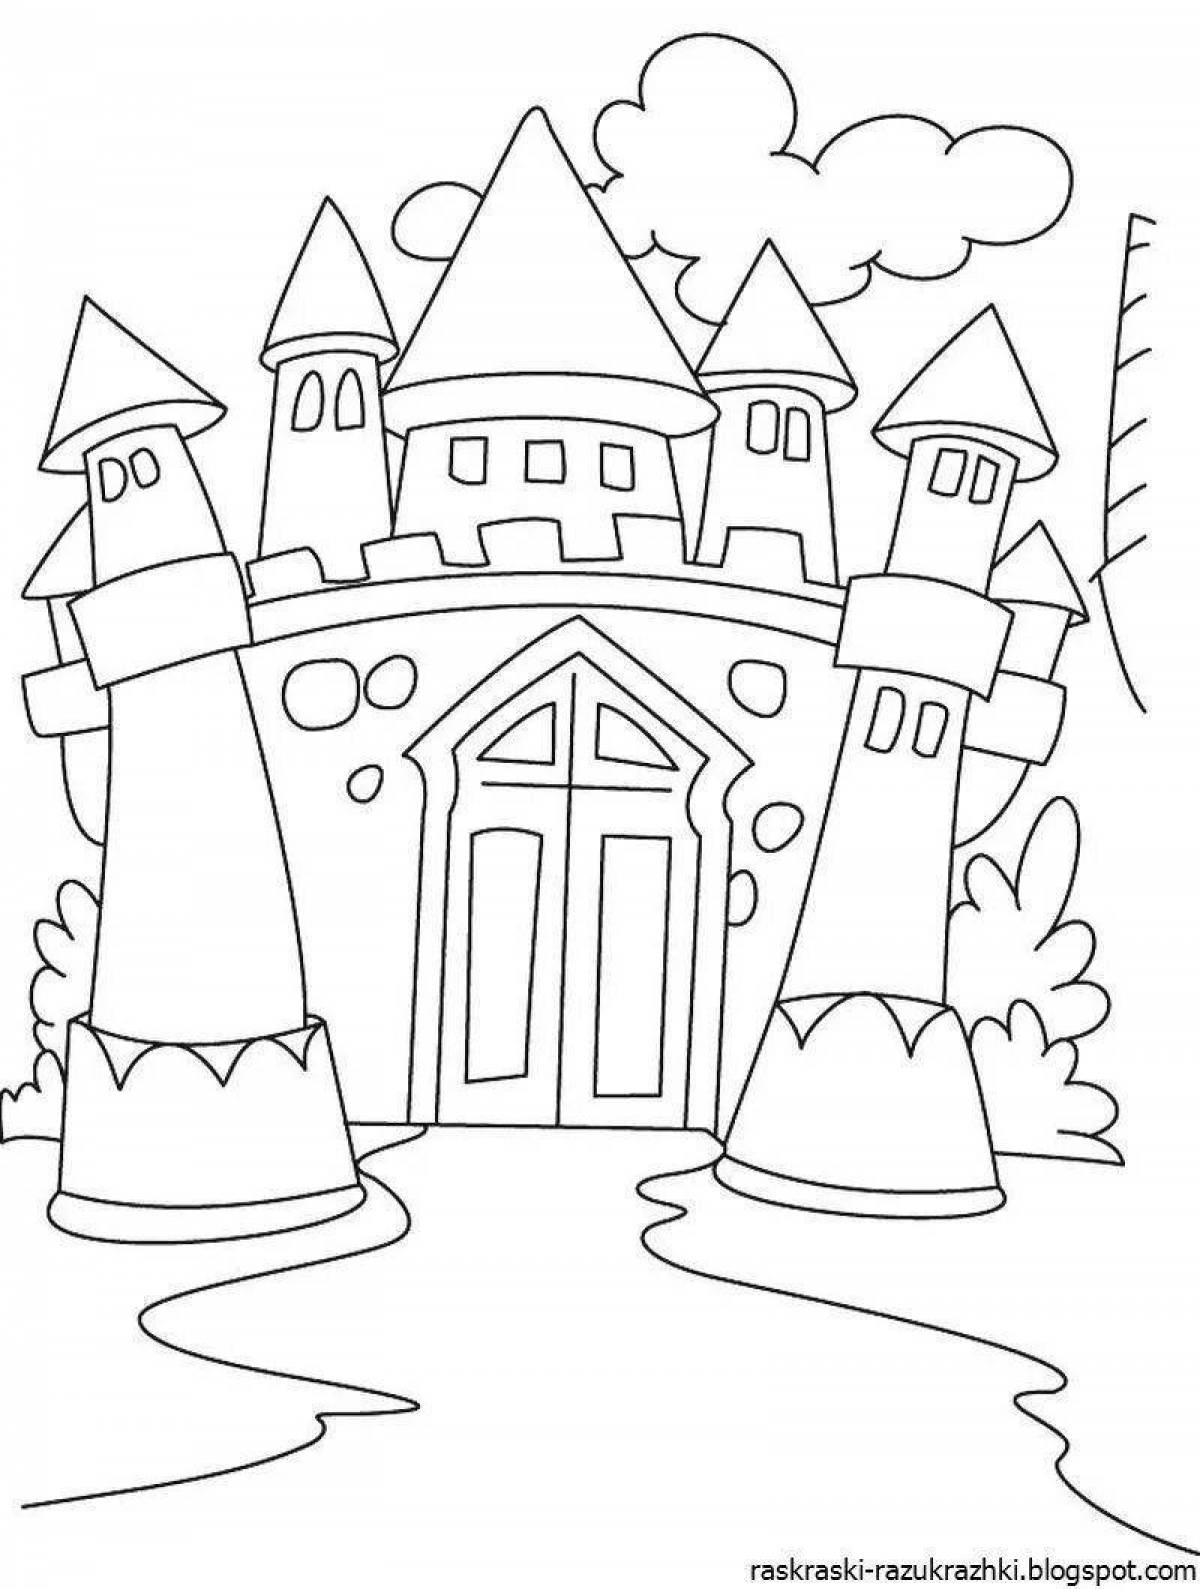 Coloring book elegant castles for girls